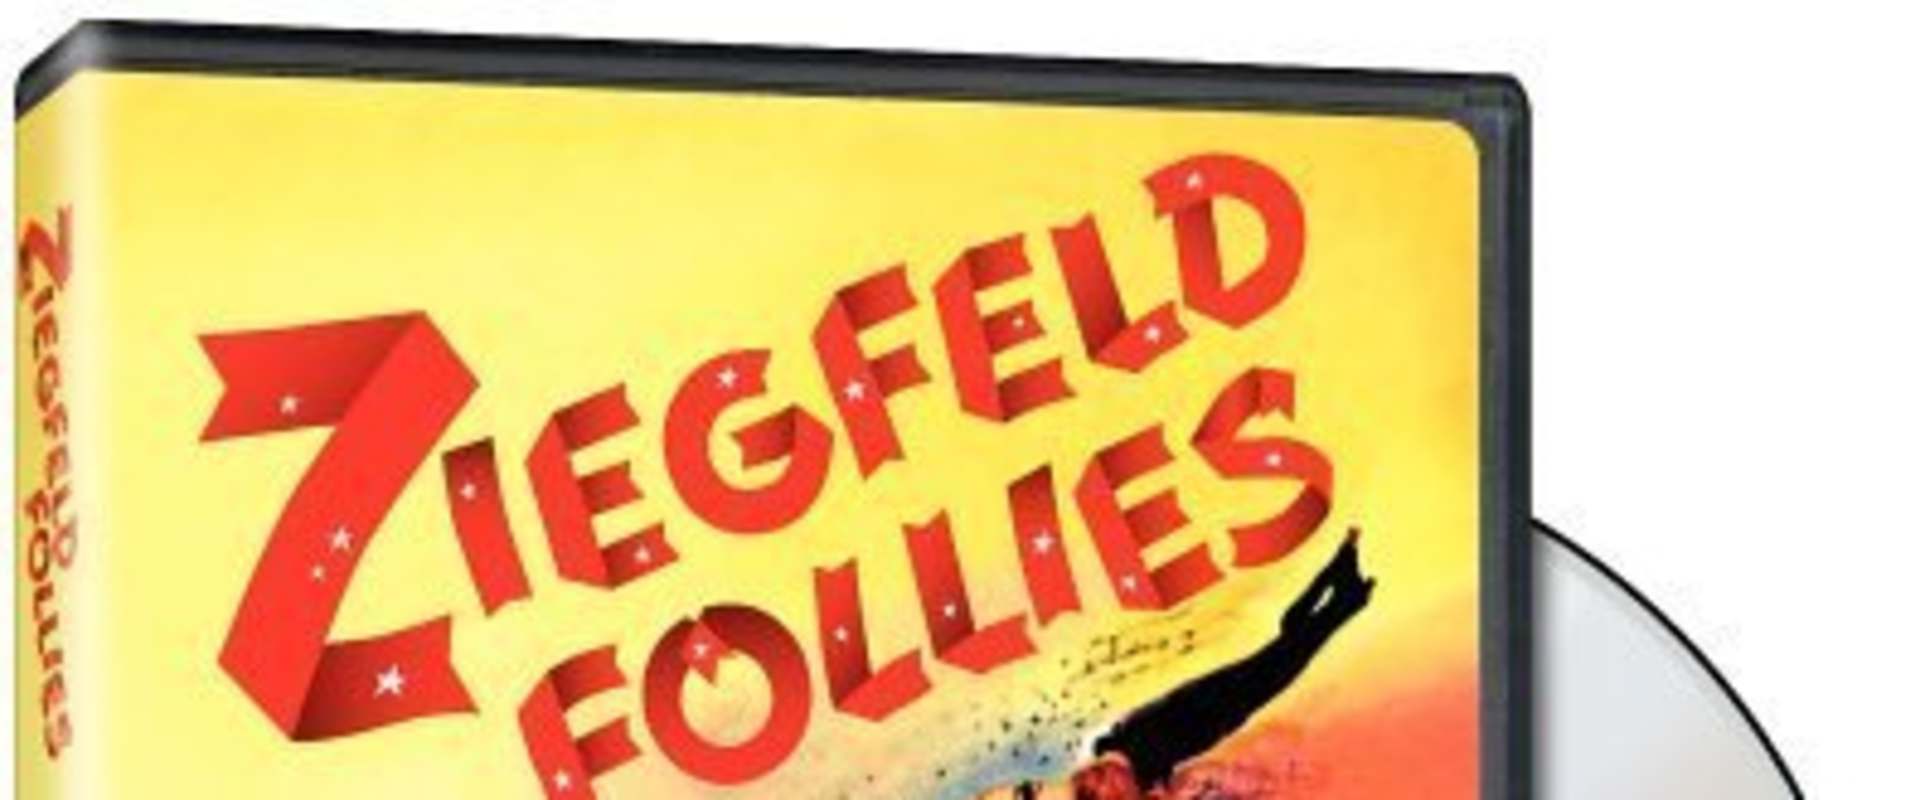 Ziegfeld Follies background 1